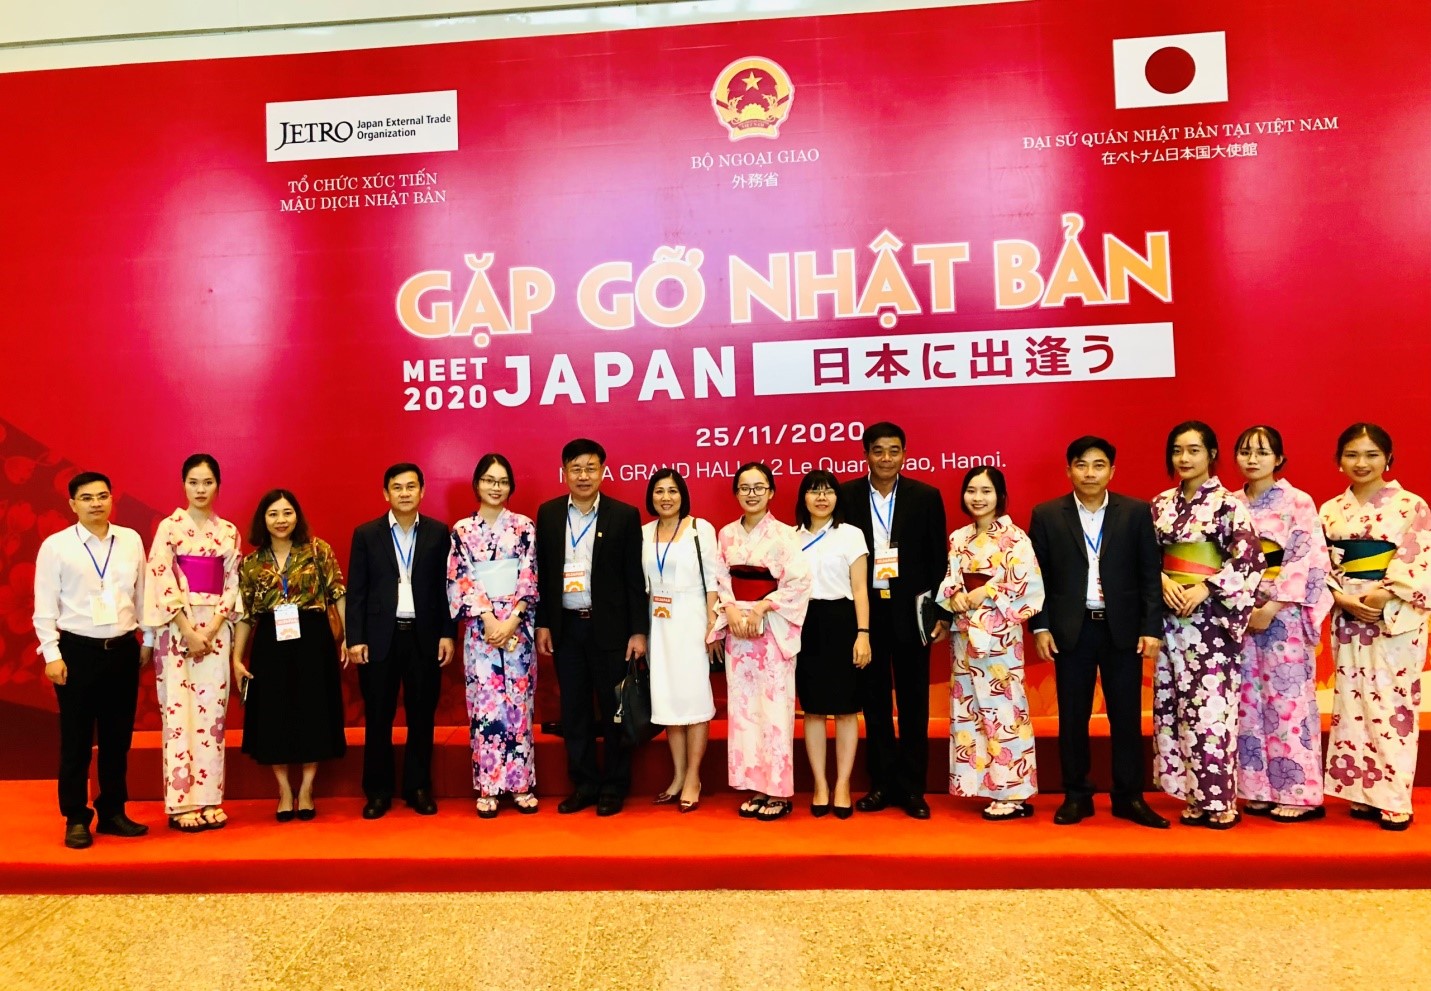 Chiều ngày 25/11, tại Hà Nội, Bộ Ngoại giao phối hợp với Đại sứ quán Nhật Bản tại Việt Nam, Tổ chức Xúc tiến Mậu dịch Nhật Bản (JETRO) tổ chức Hội nghị “Gặp gỡ Nhật Bản 2020” - Meet Japan 2020.